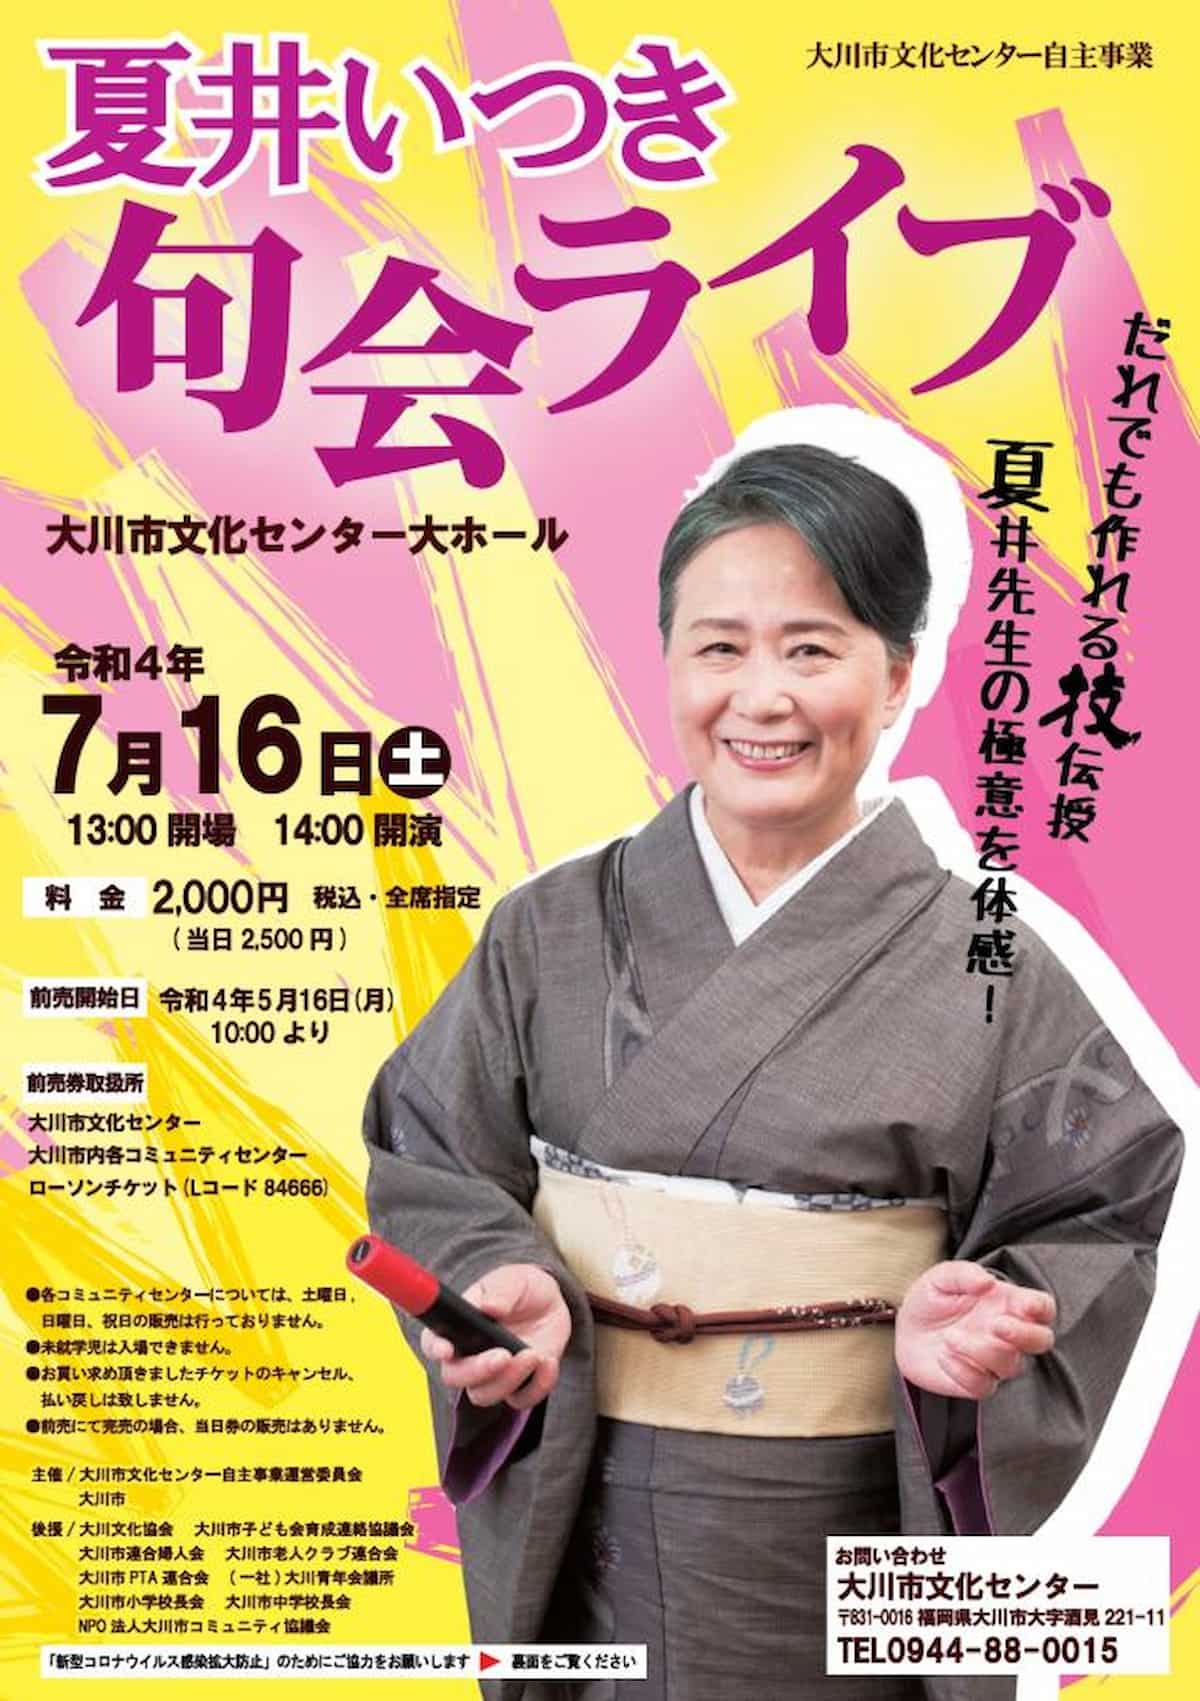 大川市文化センターで「夏井いつき句会ライブ」が開催されるみたい。7月16日